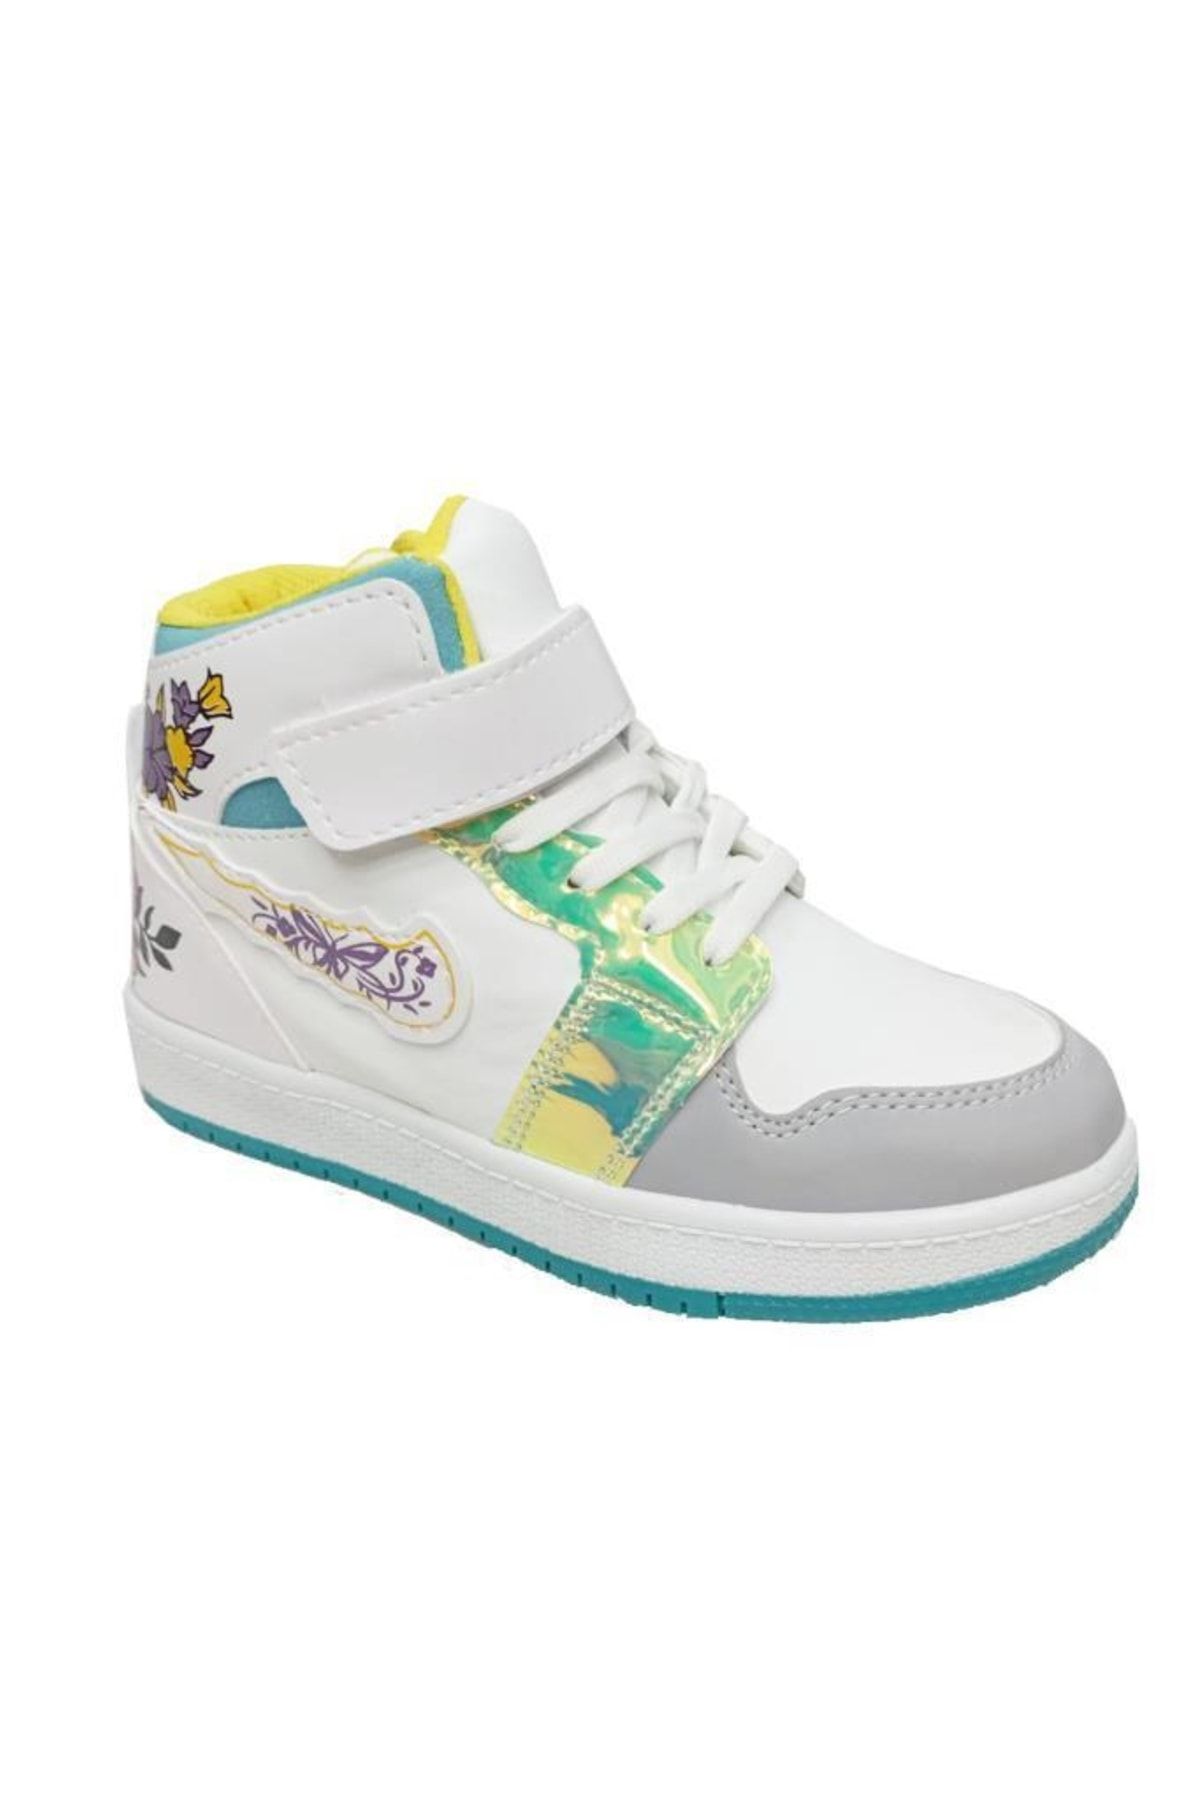 Callion 048 Deri Sneakers Kız Çocuk Spor Ayakkabı Beyaz Buz Su Yeşili